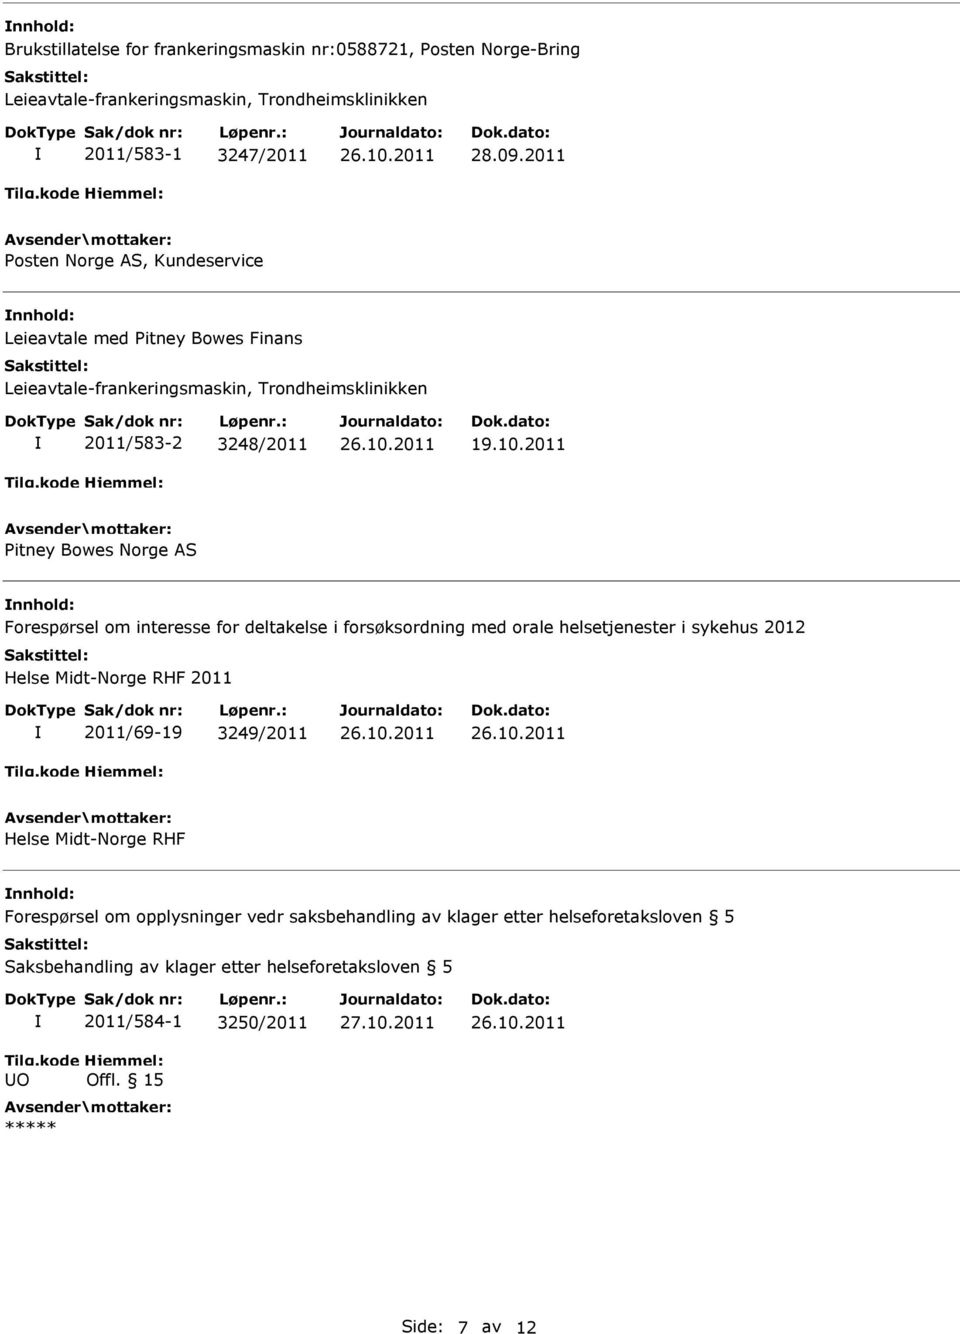 2011 itney Bowes Norge AS Forespørsel om interesse for deltakelse i forsøksordning med orale helsetjenester i sykehus 2012 Helse Midt-Norge RHF 2011 2011/69-19